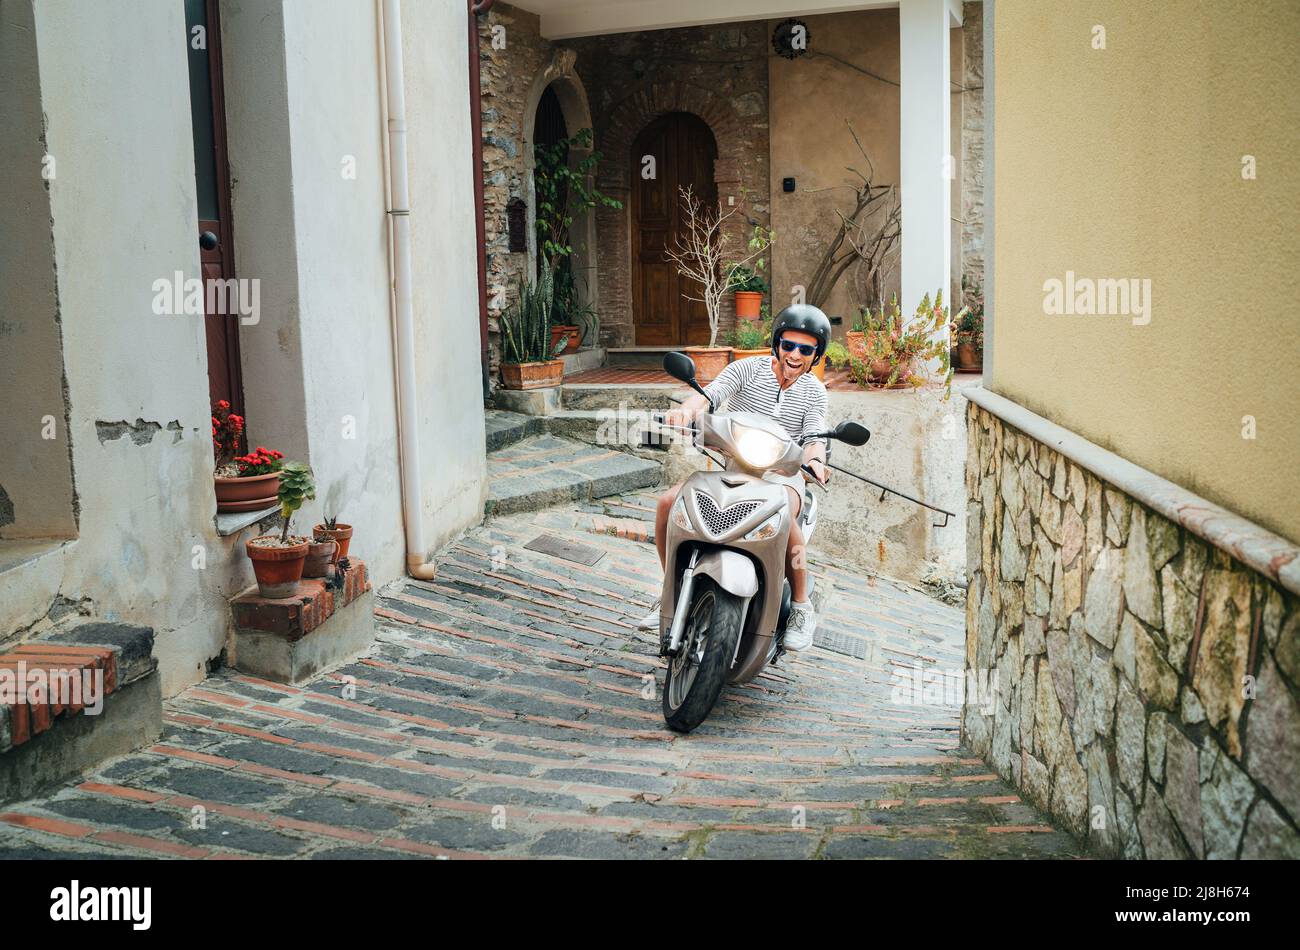 Fröhlich lächelnder Mann mit Helm und Sonnenbrille auf dem Motorroller auf den engen Straßen der sizilianischen Altstadt. Glücklicher italienischer Urlaub und Transport Stockfoto